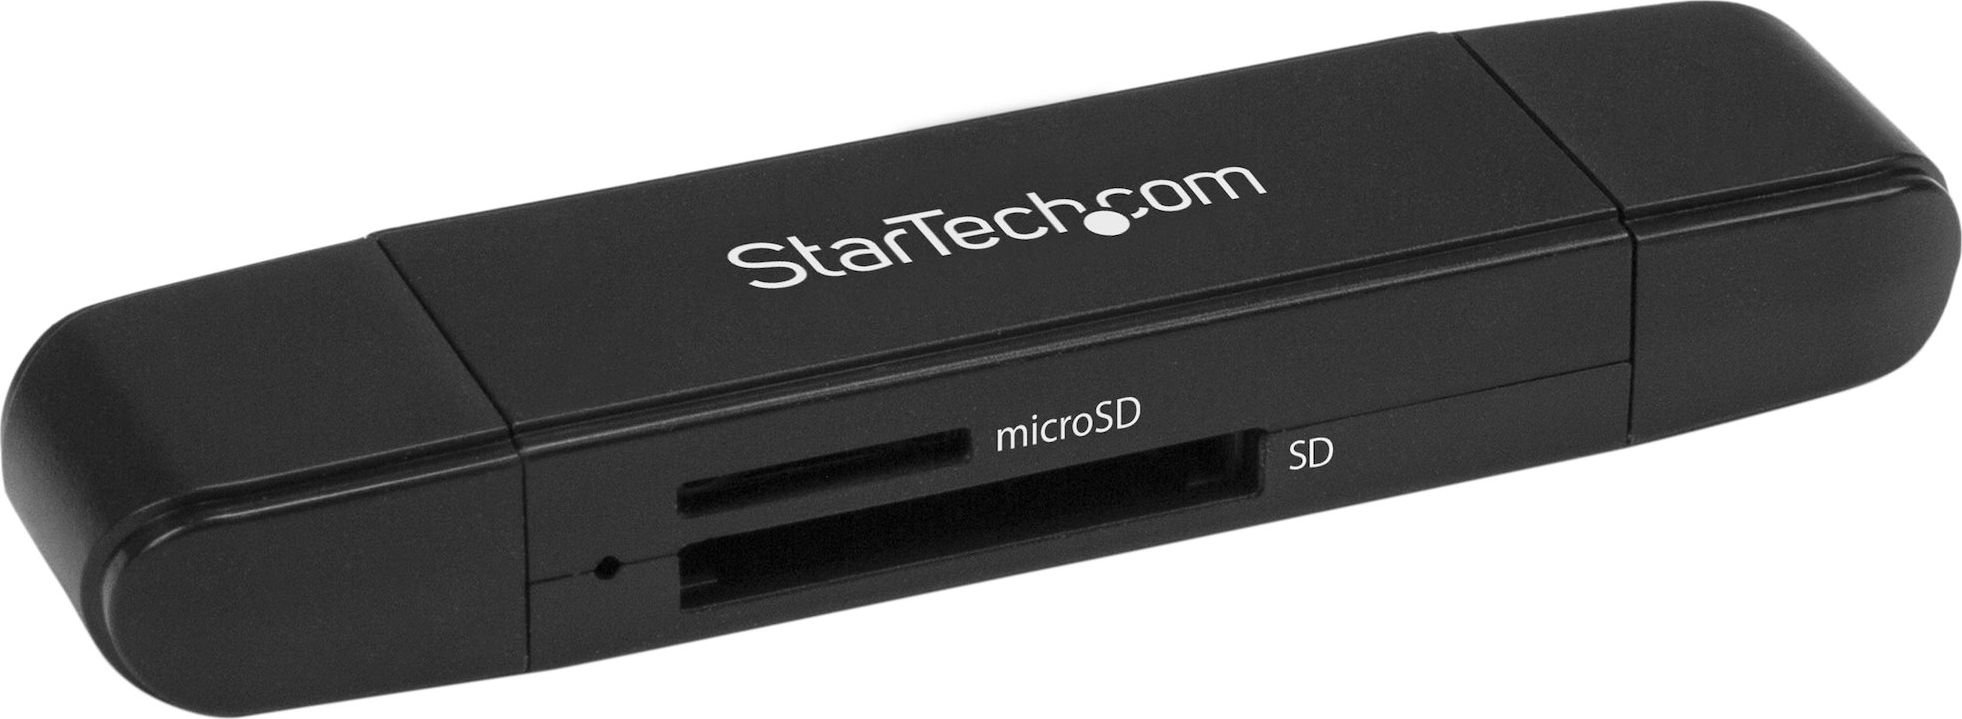 Startech USB 3.0 CITITOR CARD SD / microSD / SD / MMC / SDHC / SDXC / microSD / SDHC IN